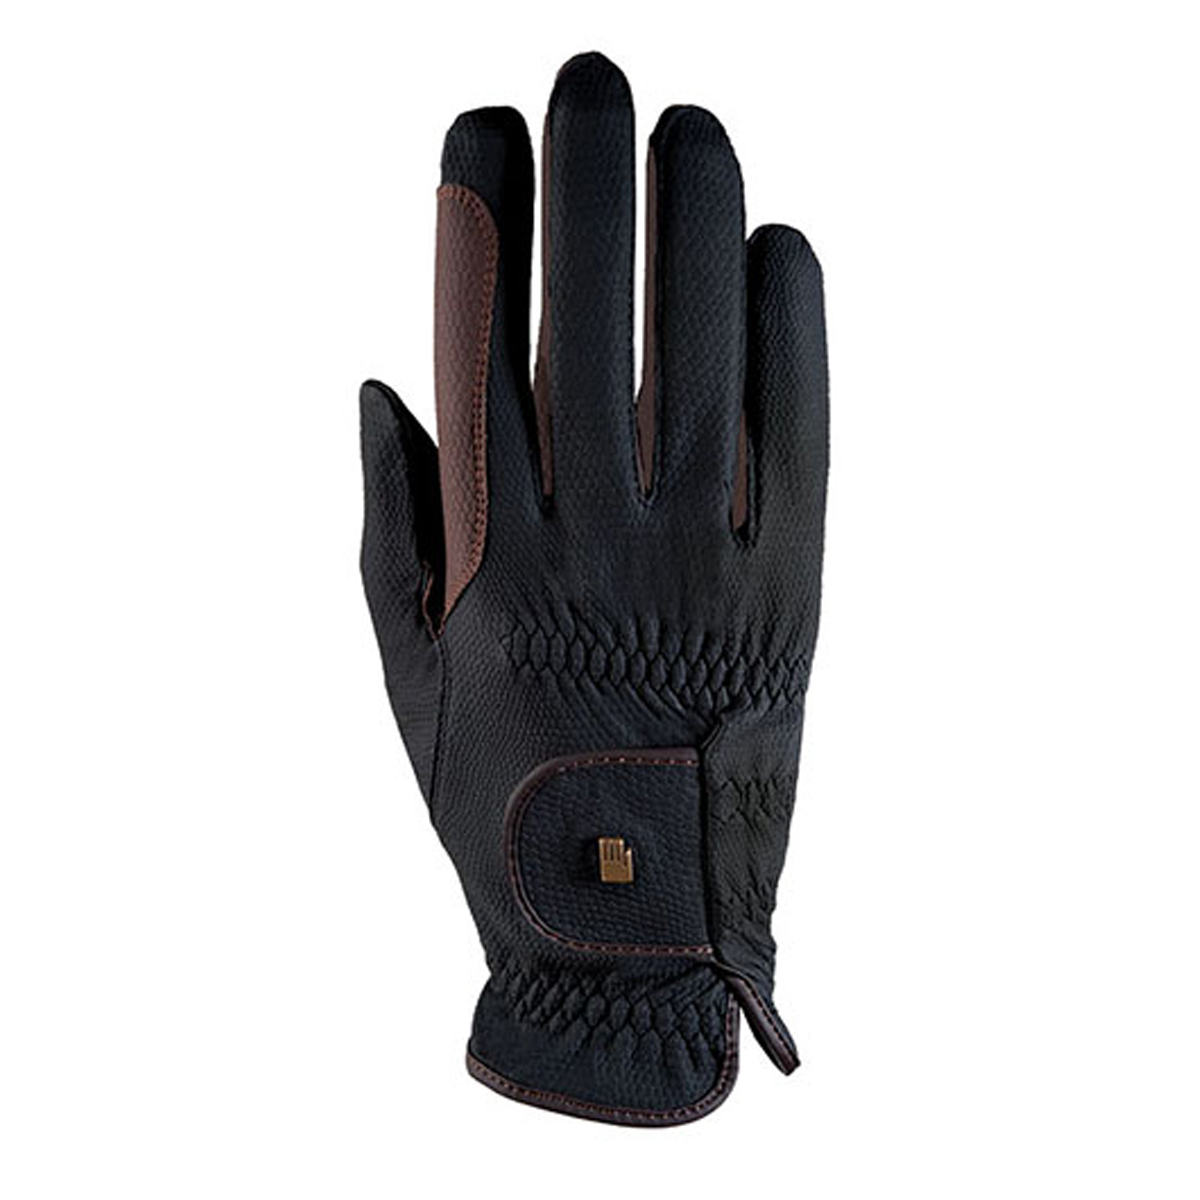 Handschoenen Roeckl Malta Grip Bicolor, 6?in black/brown